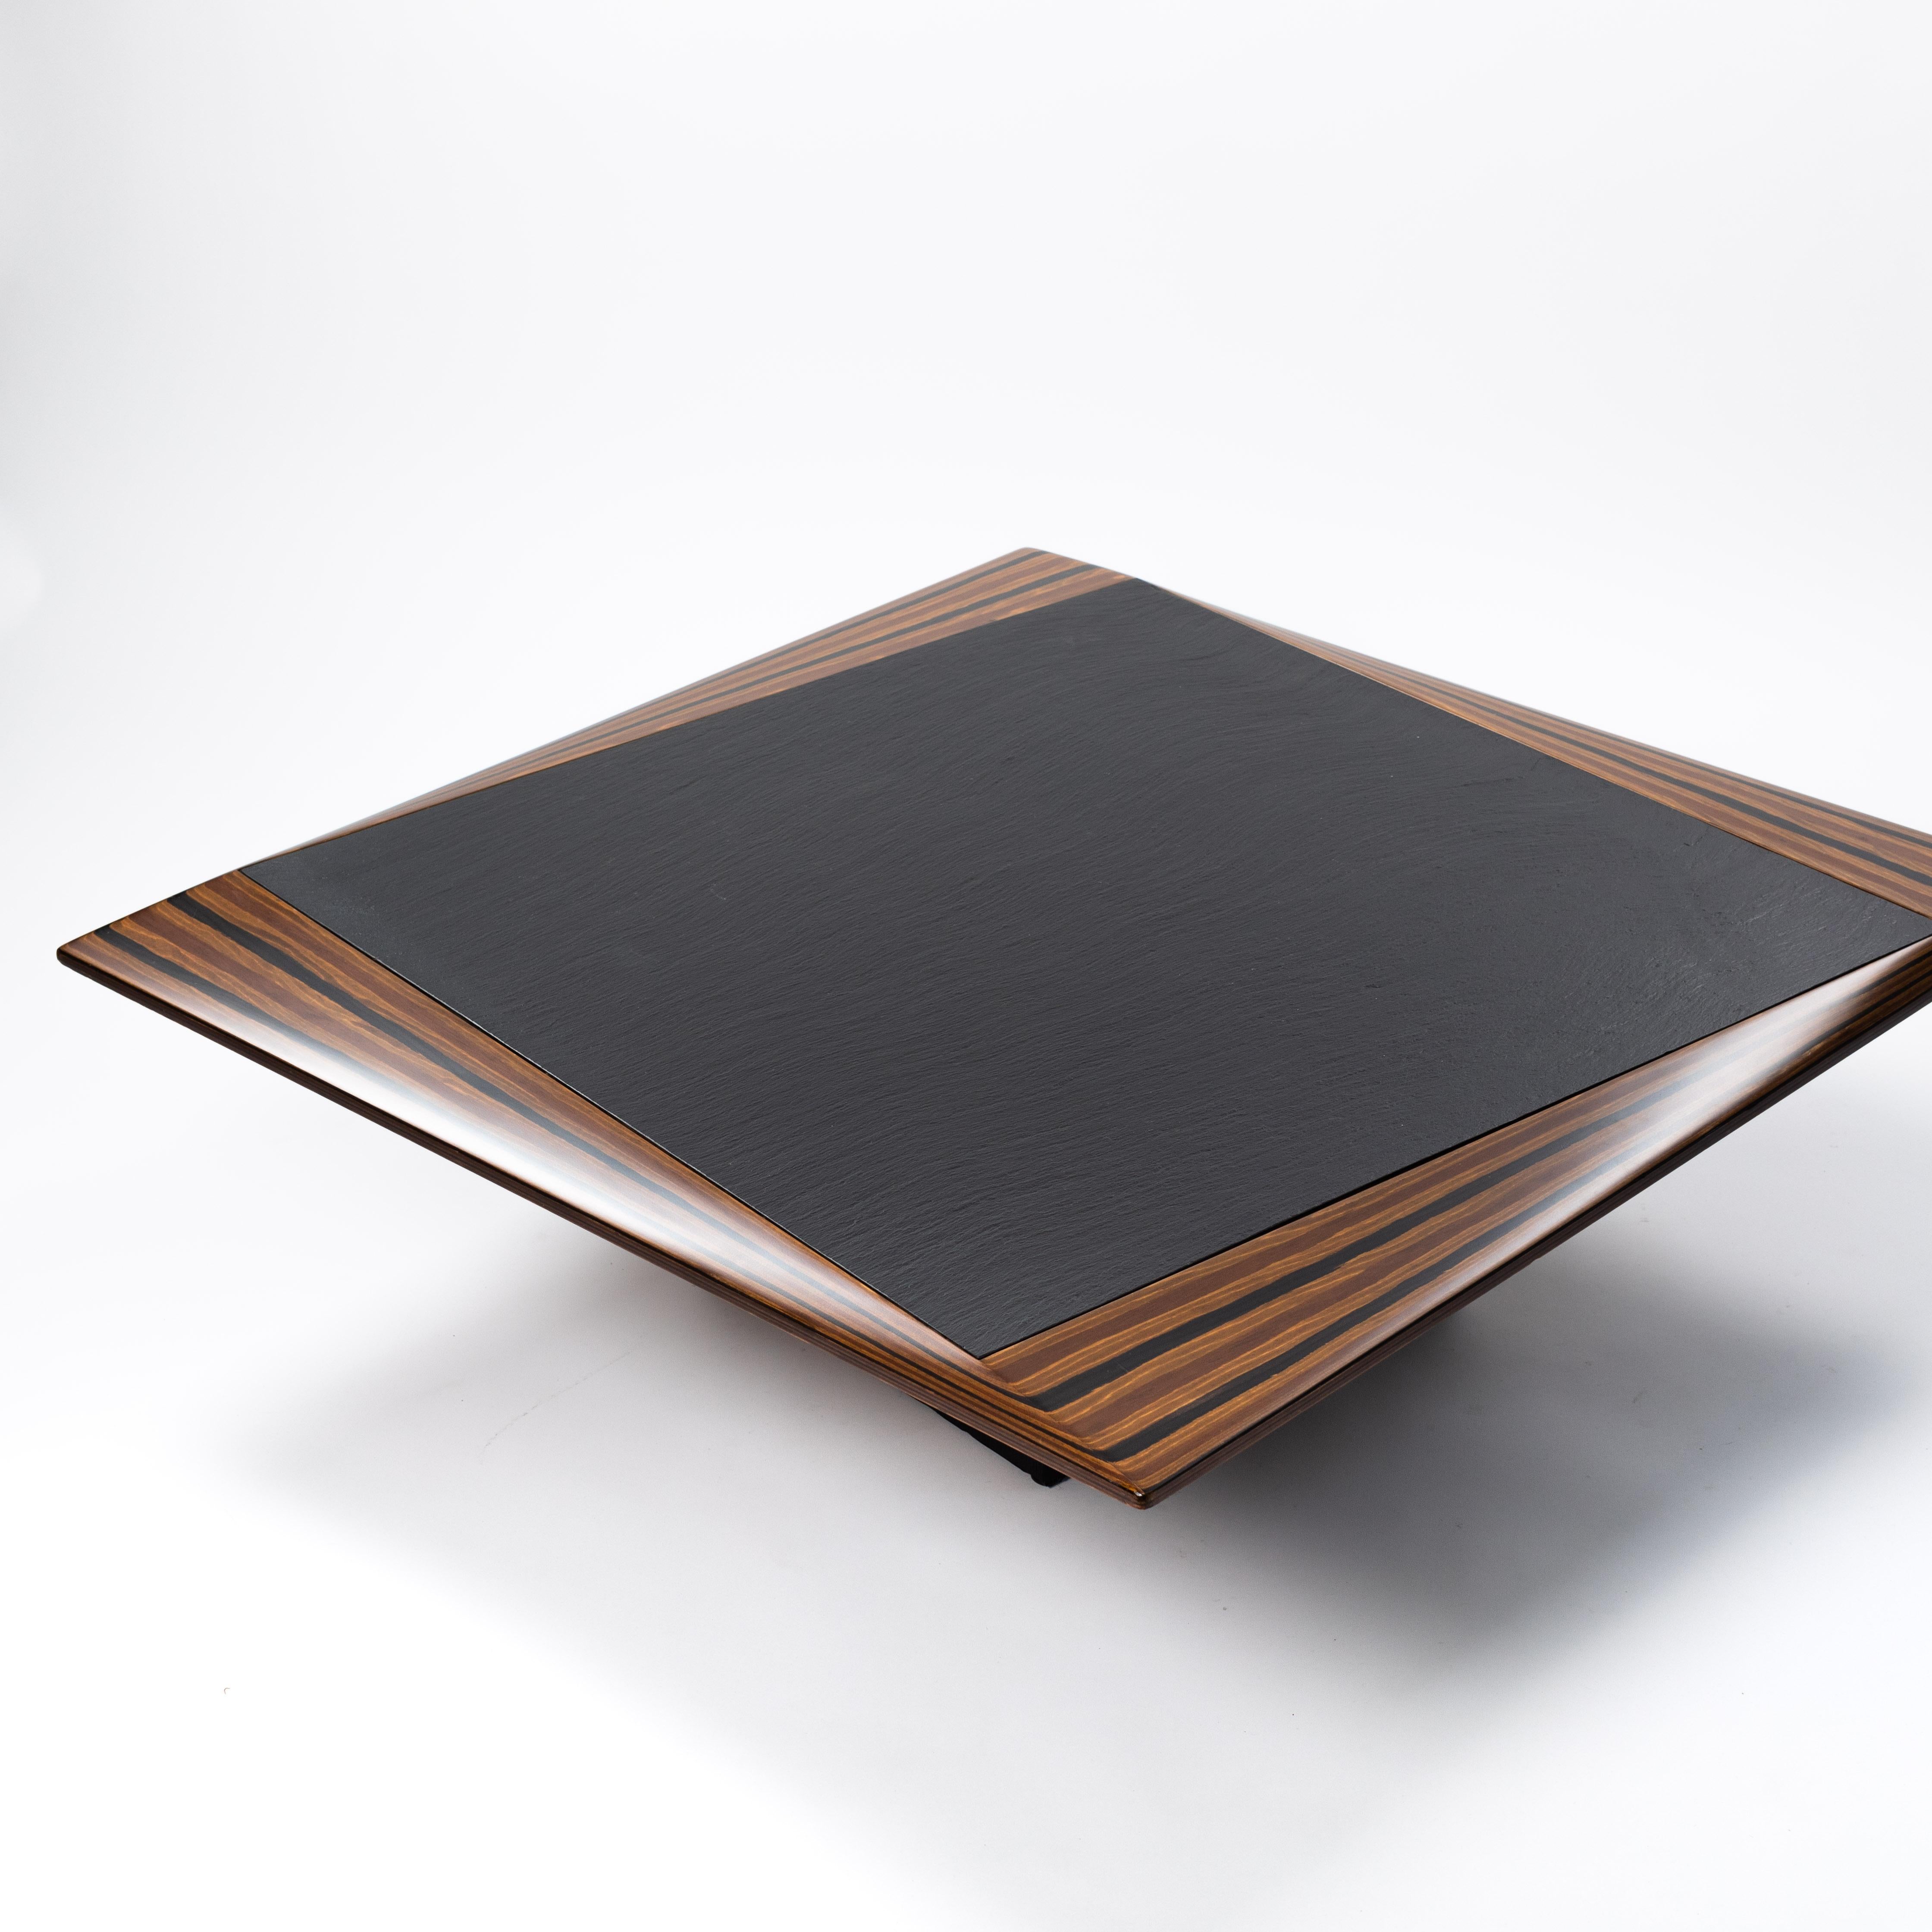 Table de canapé italienne des années 1980 attribuée au designer Tobia Scarpa.

Cette table impressionne par son design inhabituel et ses matériaux sobres.
Le plateau de la table est en pierre, en ardoise solide - l'encadrement du
La plaque (3-16cm)